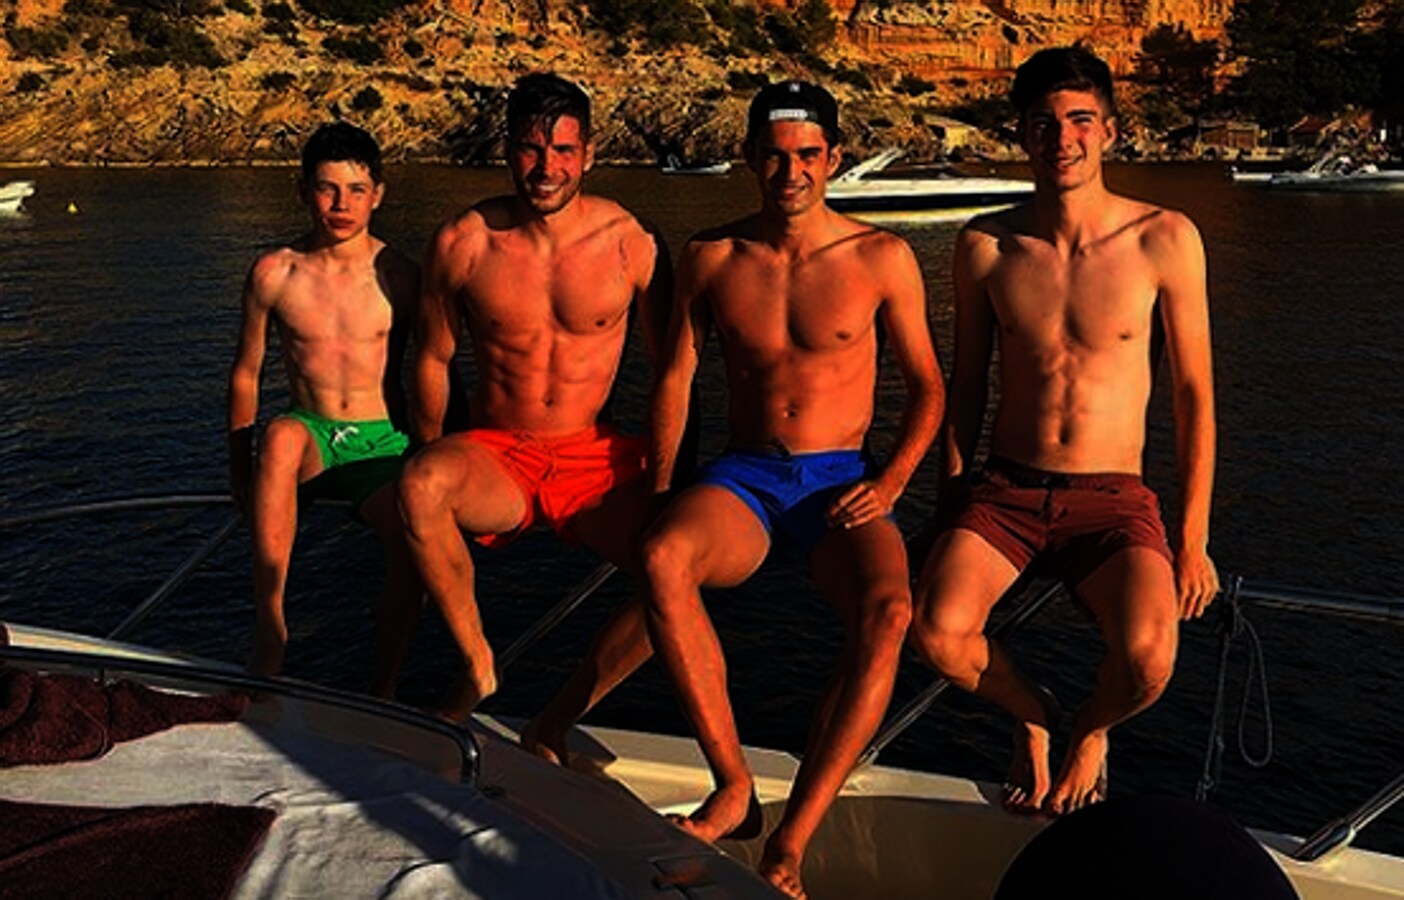 Vacaciones en familia. Luca Zidane, el segundo hijo de Zidane, comparte esta imagen con sus hermanos en las playas de Ibiza. Una estancia de desconexión familiar en la que aprovechan para coger colorcito.